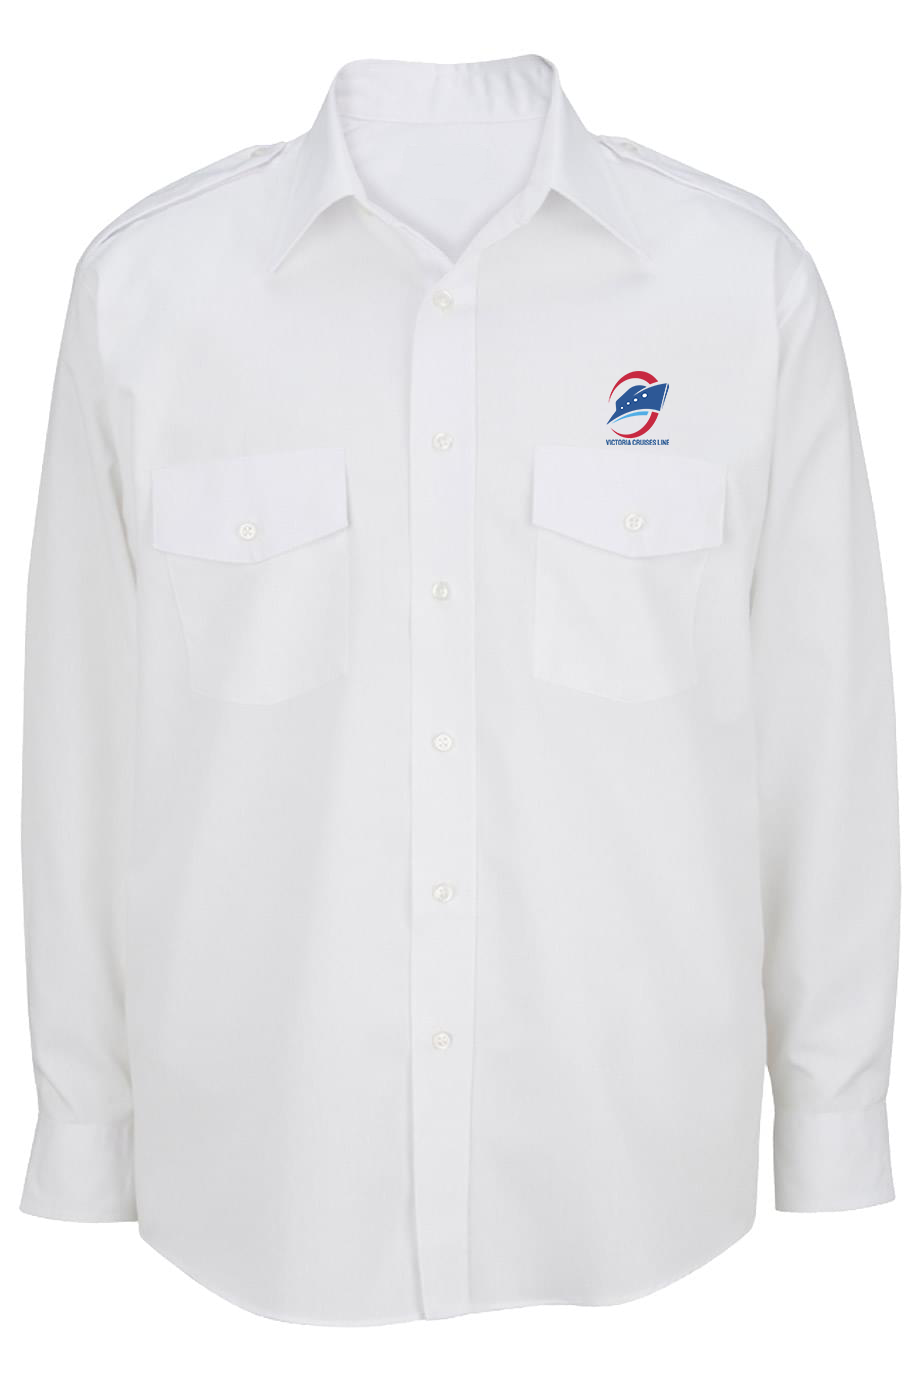 Men's Long-Sleeve Shirt with Epaulettes, White [Left Chest / VCL Full Color]